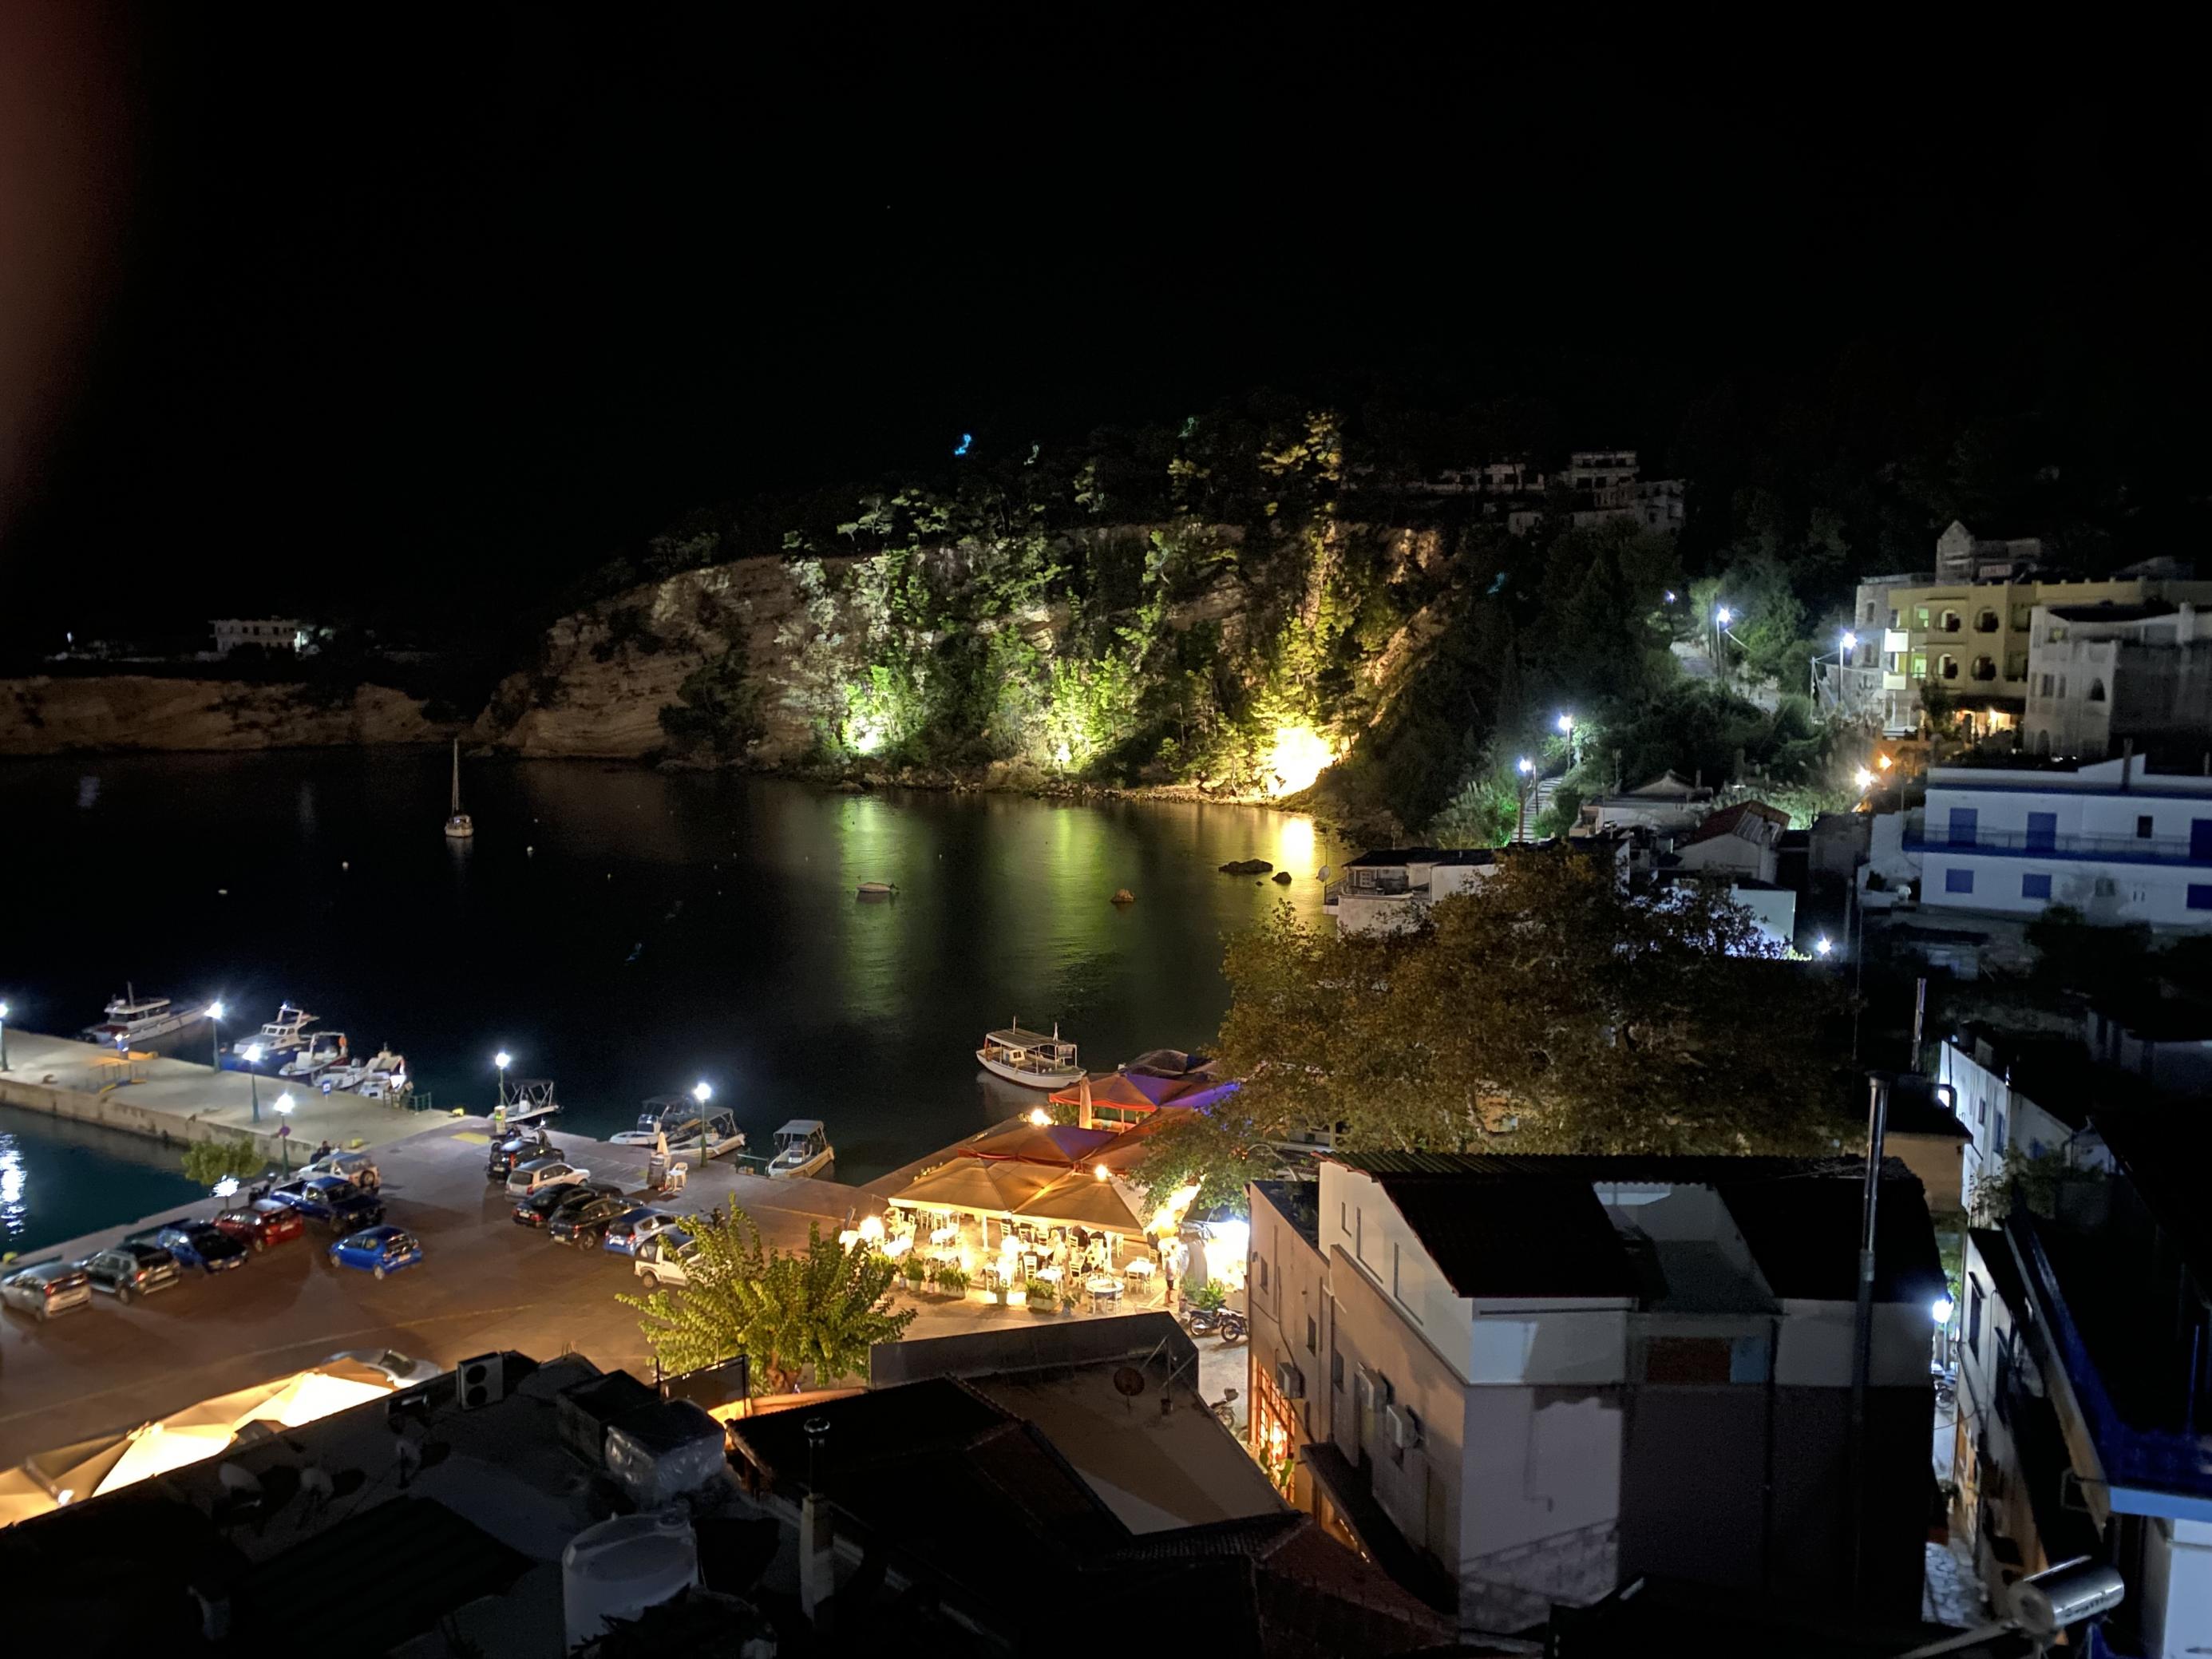 Nächtliche Szene von einem kleinen Hafen mit Strand, Felswand und vielen bunten Lichtern